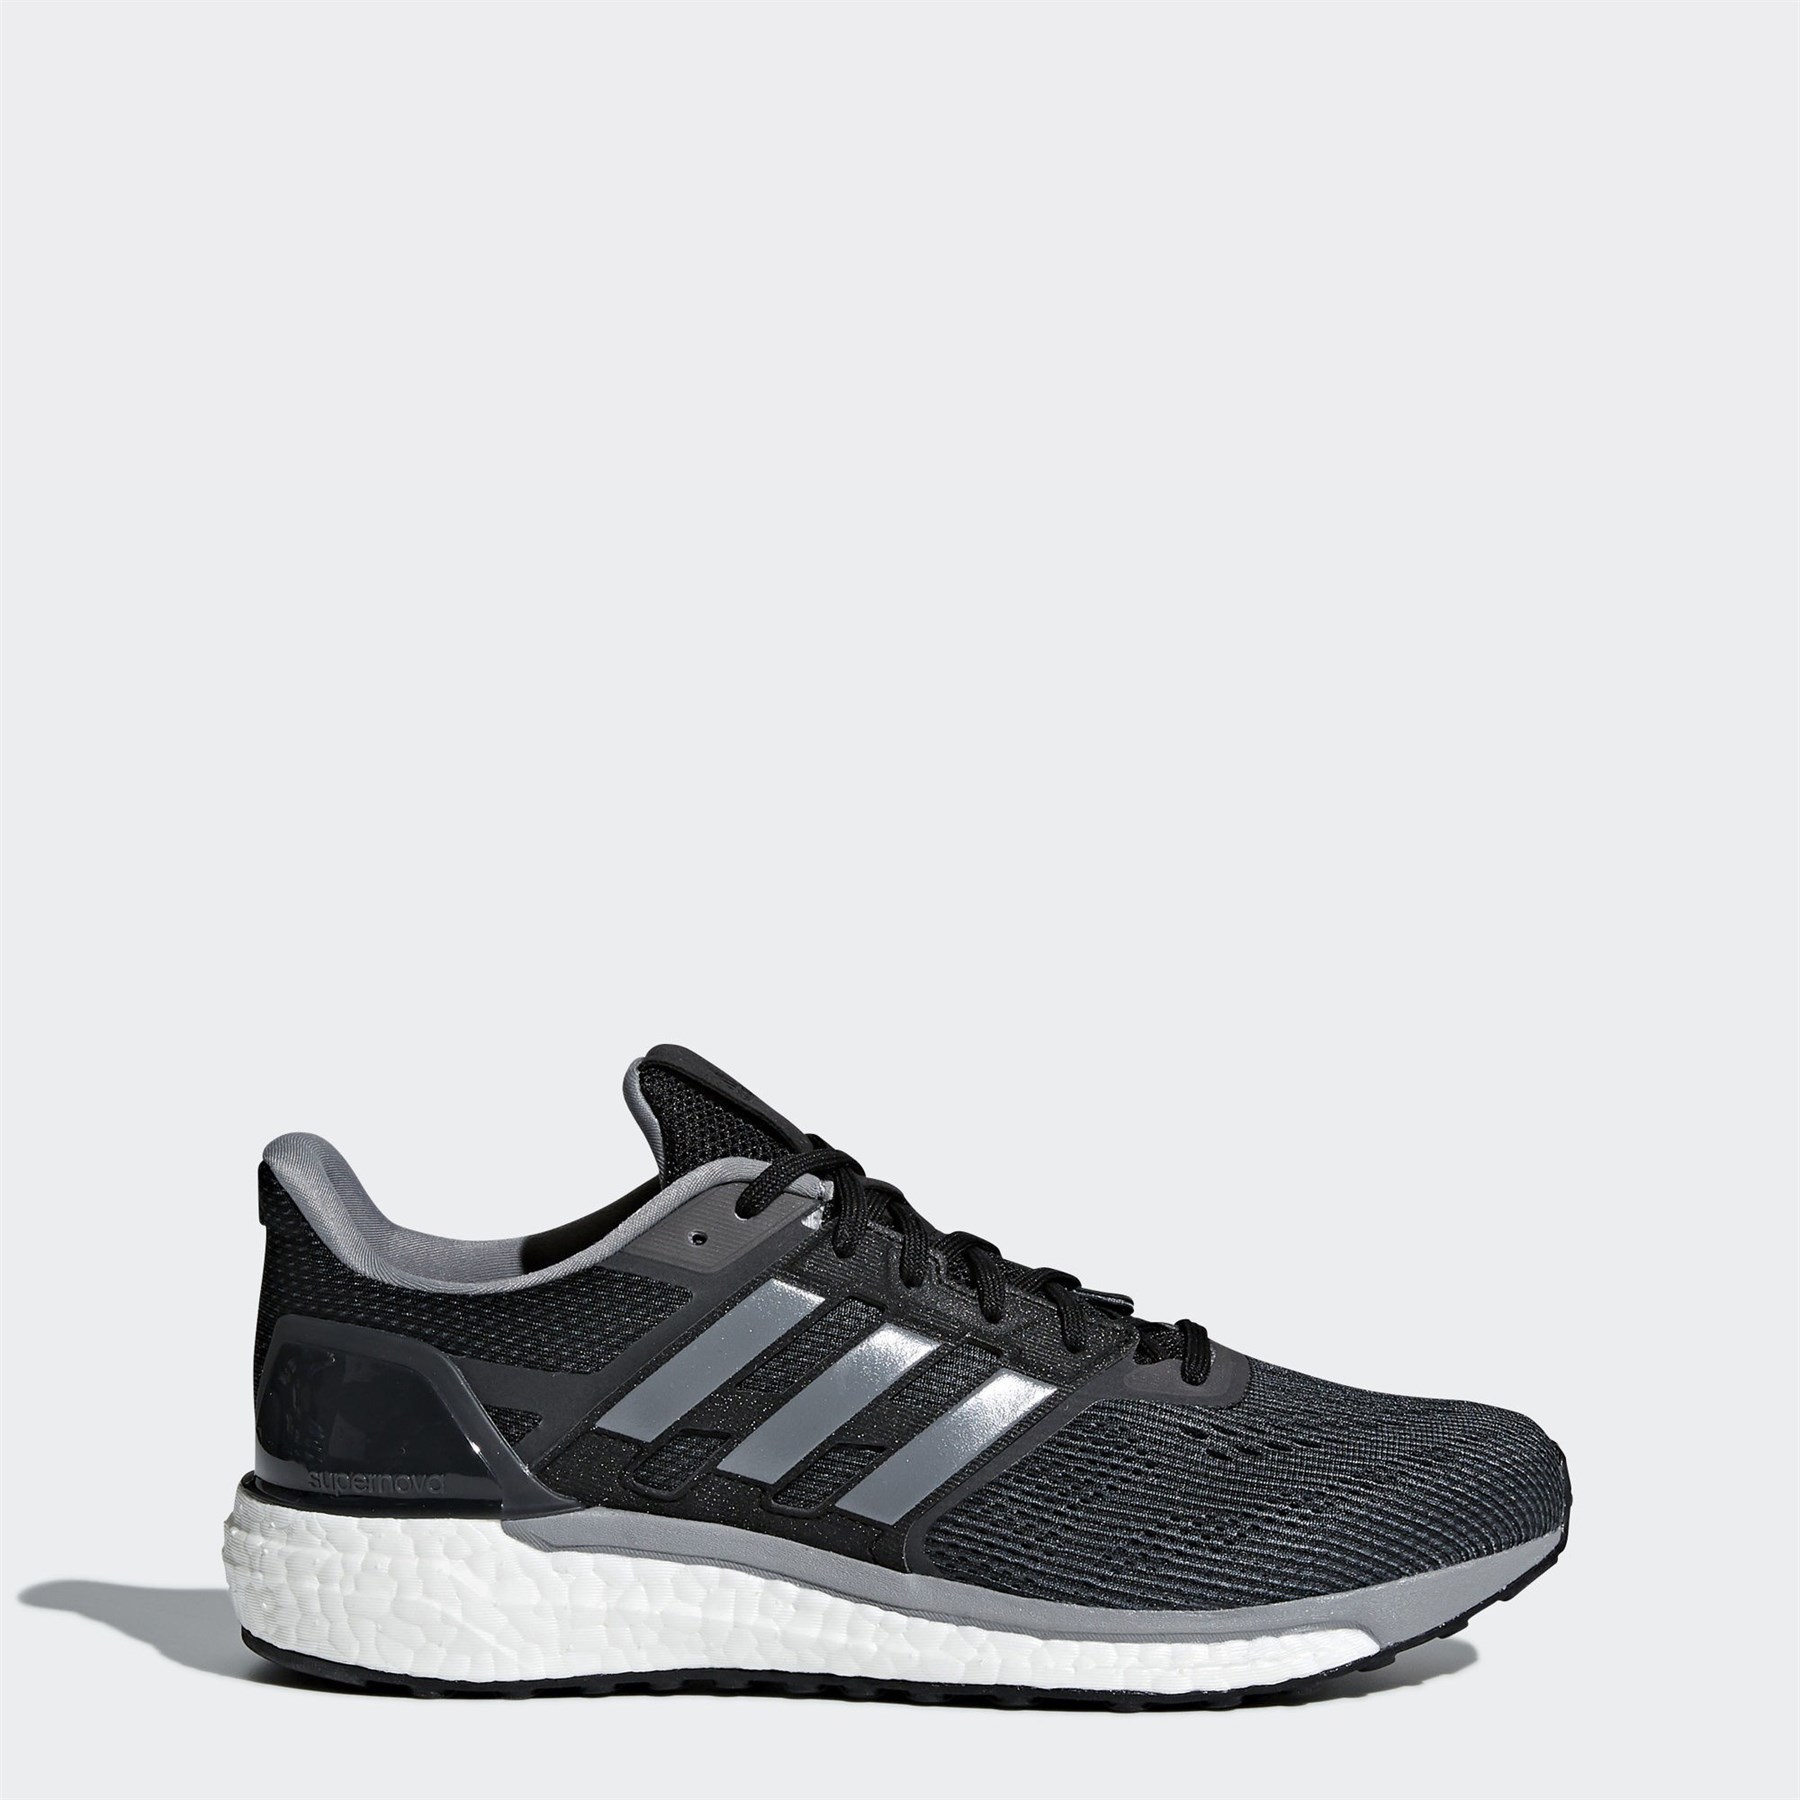 Adidas Erkek Koşu Yürüyüş Ayakkabısı CG4022 SUPERNOVA M